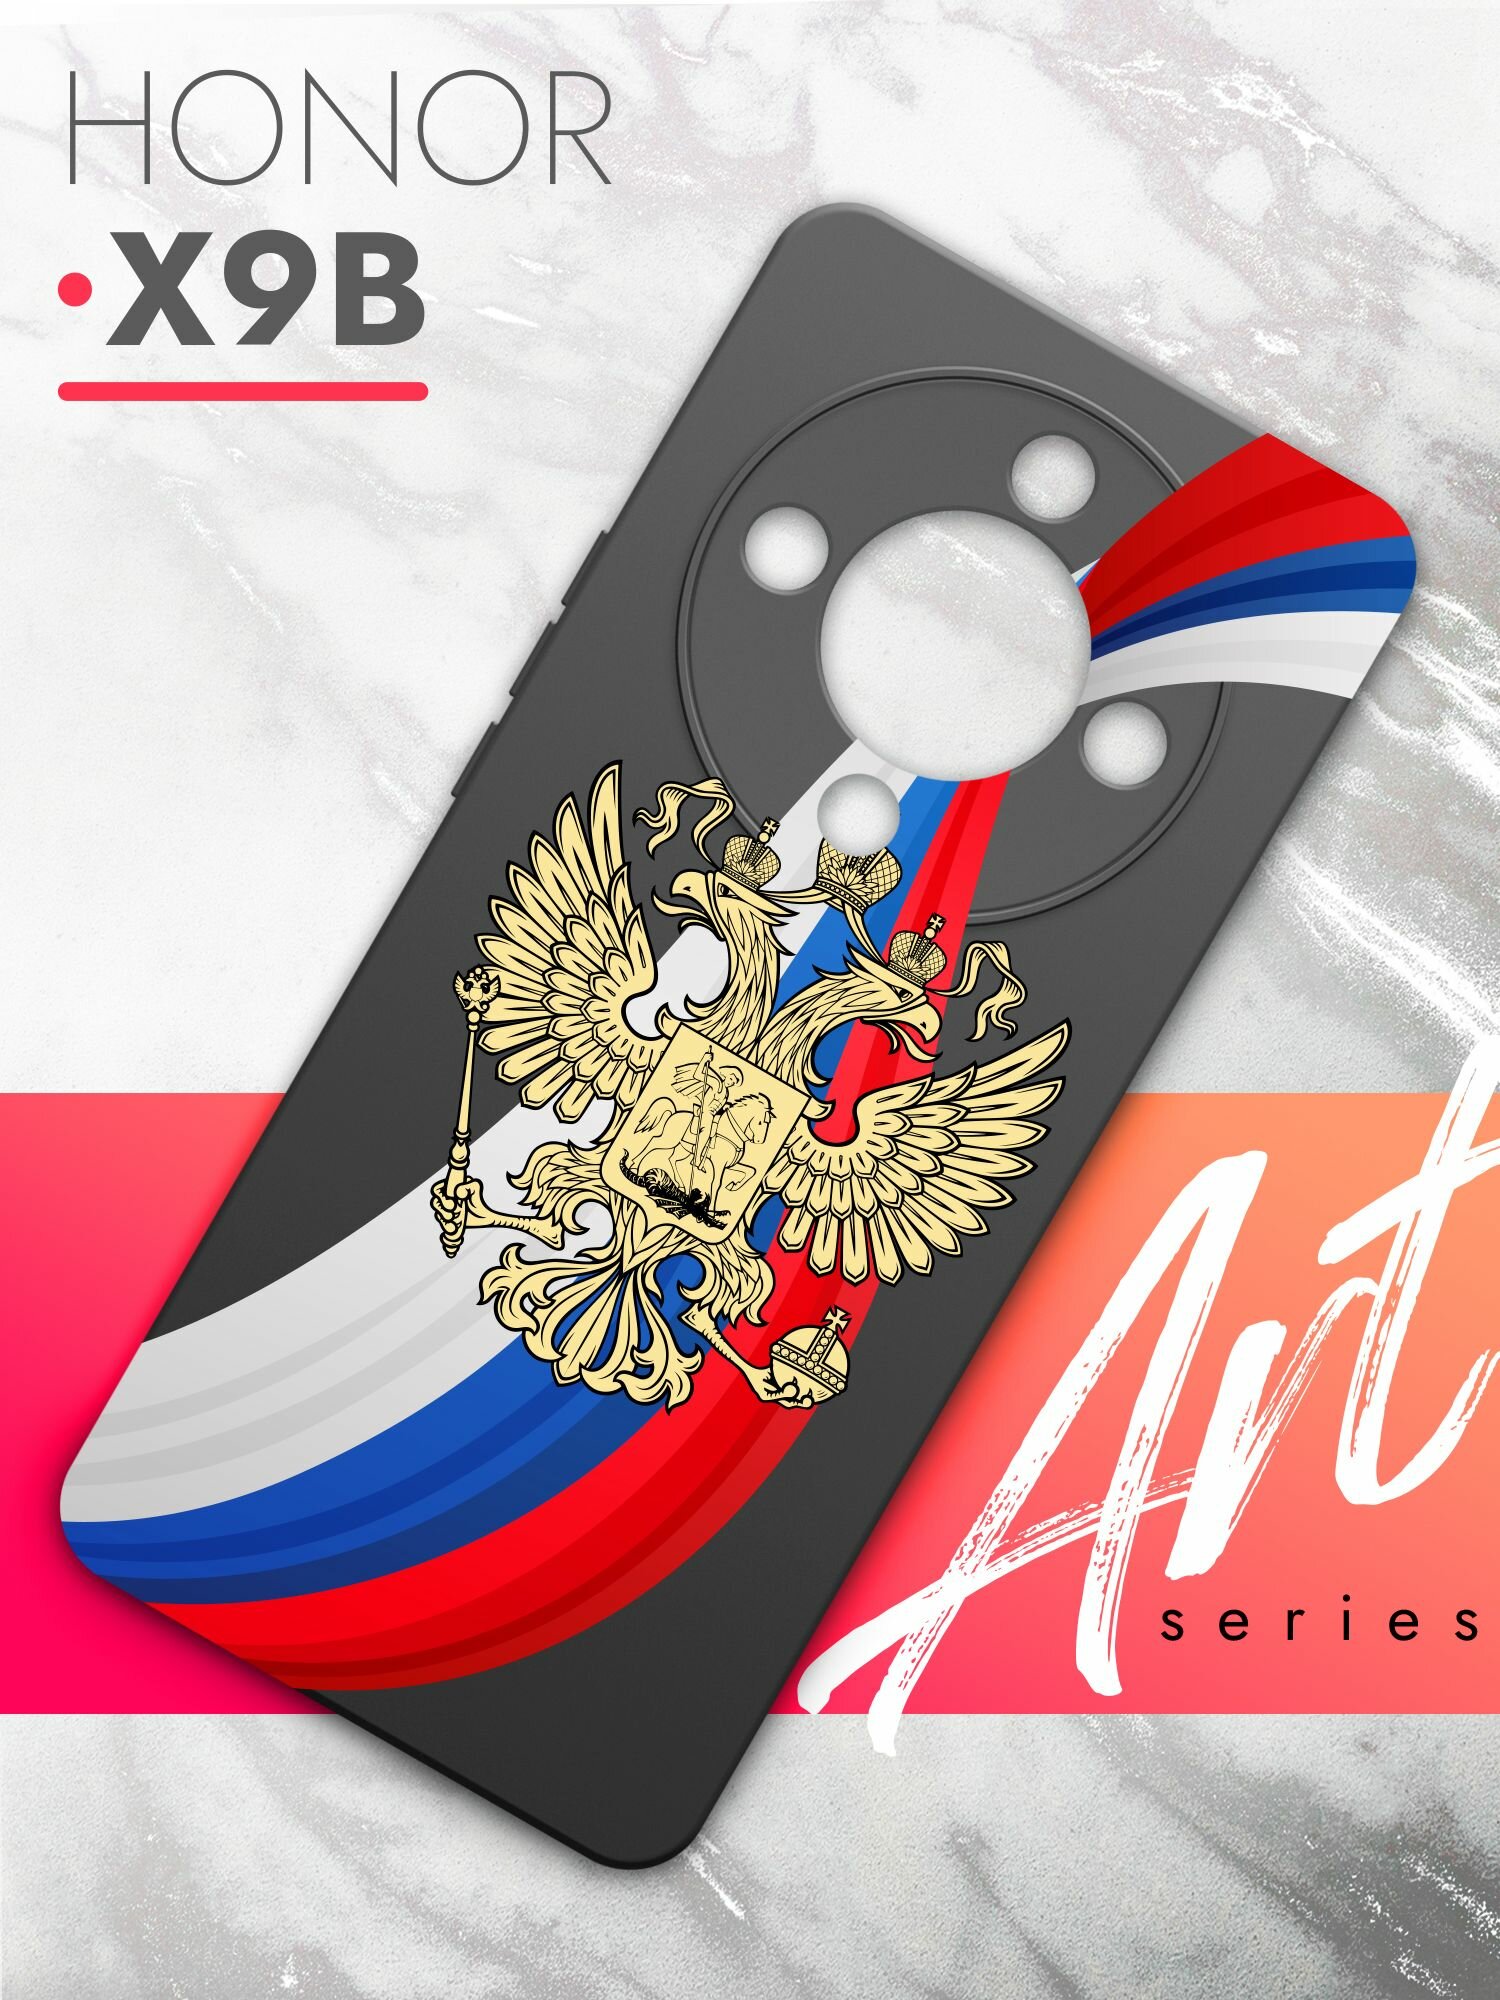 Чехол на Honor X9b (Хонор Х9б) черный матовый силиконовый с защитой (бортиком) вокруг камер, Brozo (принт) Россия Флаг-Лента